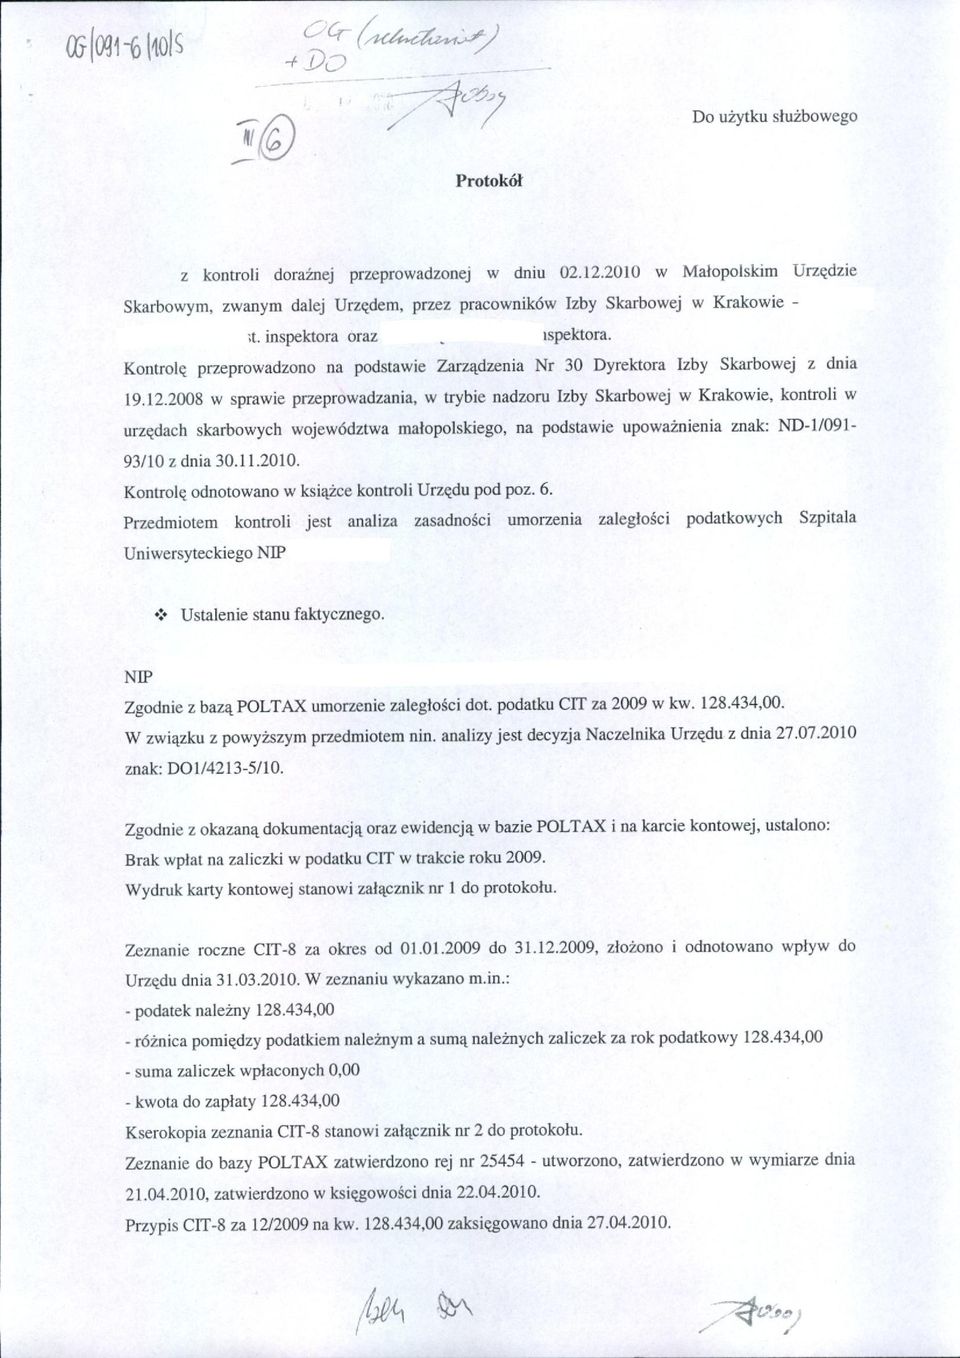 kontroli w urzędach skarbowych województwa małopolskiego, na podstawie upoważnienia znak: ND.I/091-93110 z dnia 30.11.2010. Kontrolę odnotowano w książce kontroli Urzędu pod poz. 6.